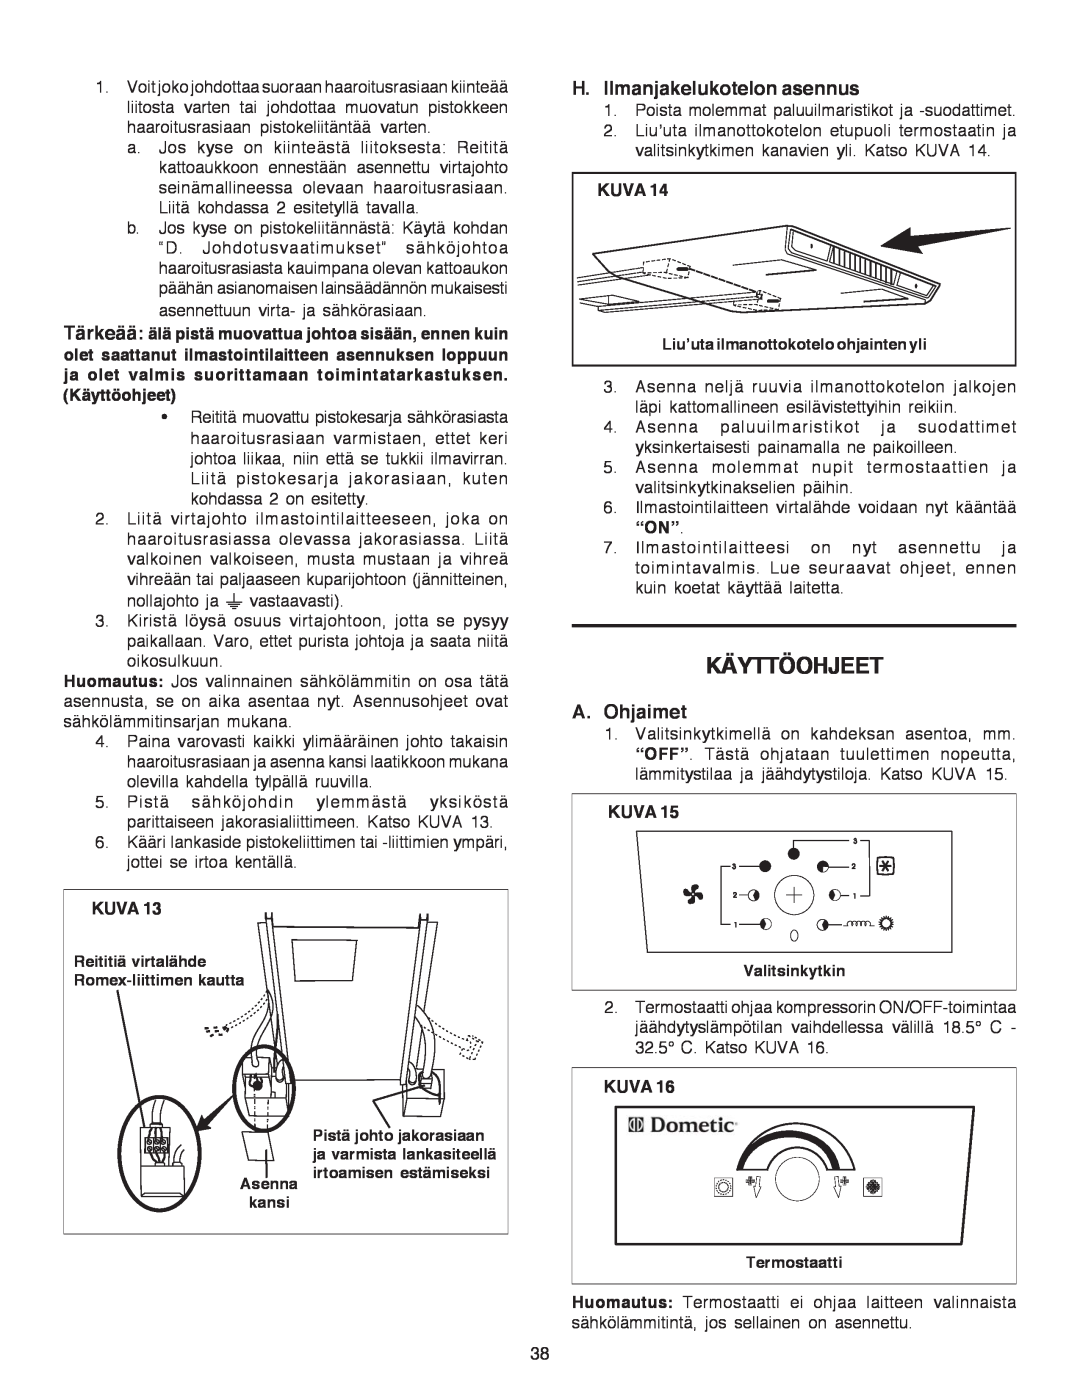 Dometic B3200 manual Käyttöohjeet, H.Ilmanjakelukotelon asennus, A.Ohjaimet, Kuva, 32.5 C. Katso KUVA 